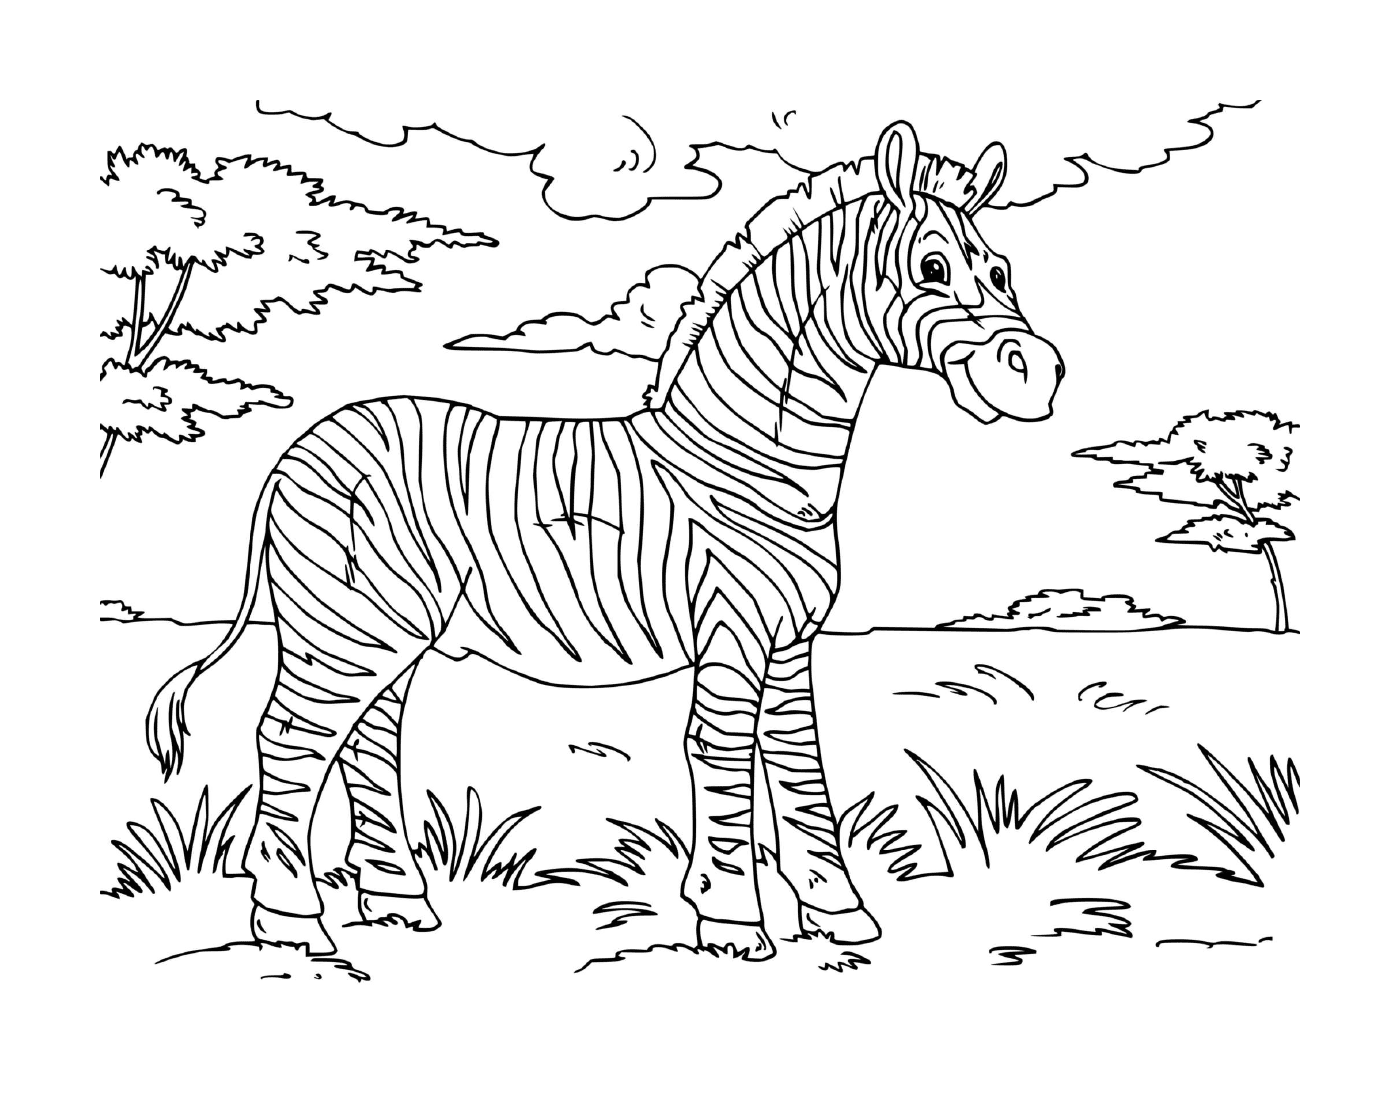  Erwachsene Zebra stehendes Feld 